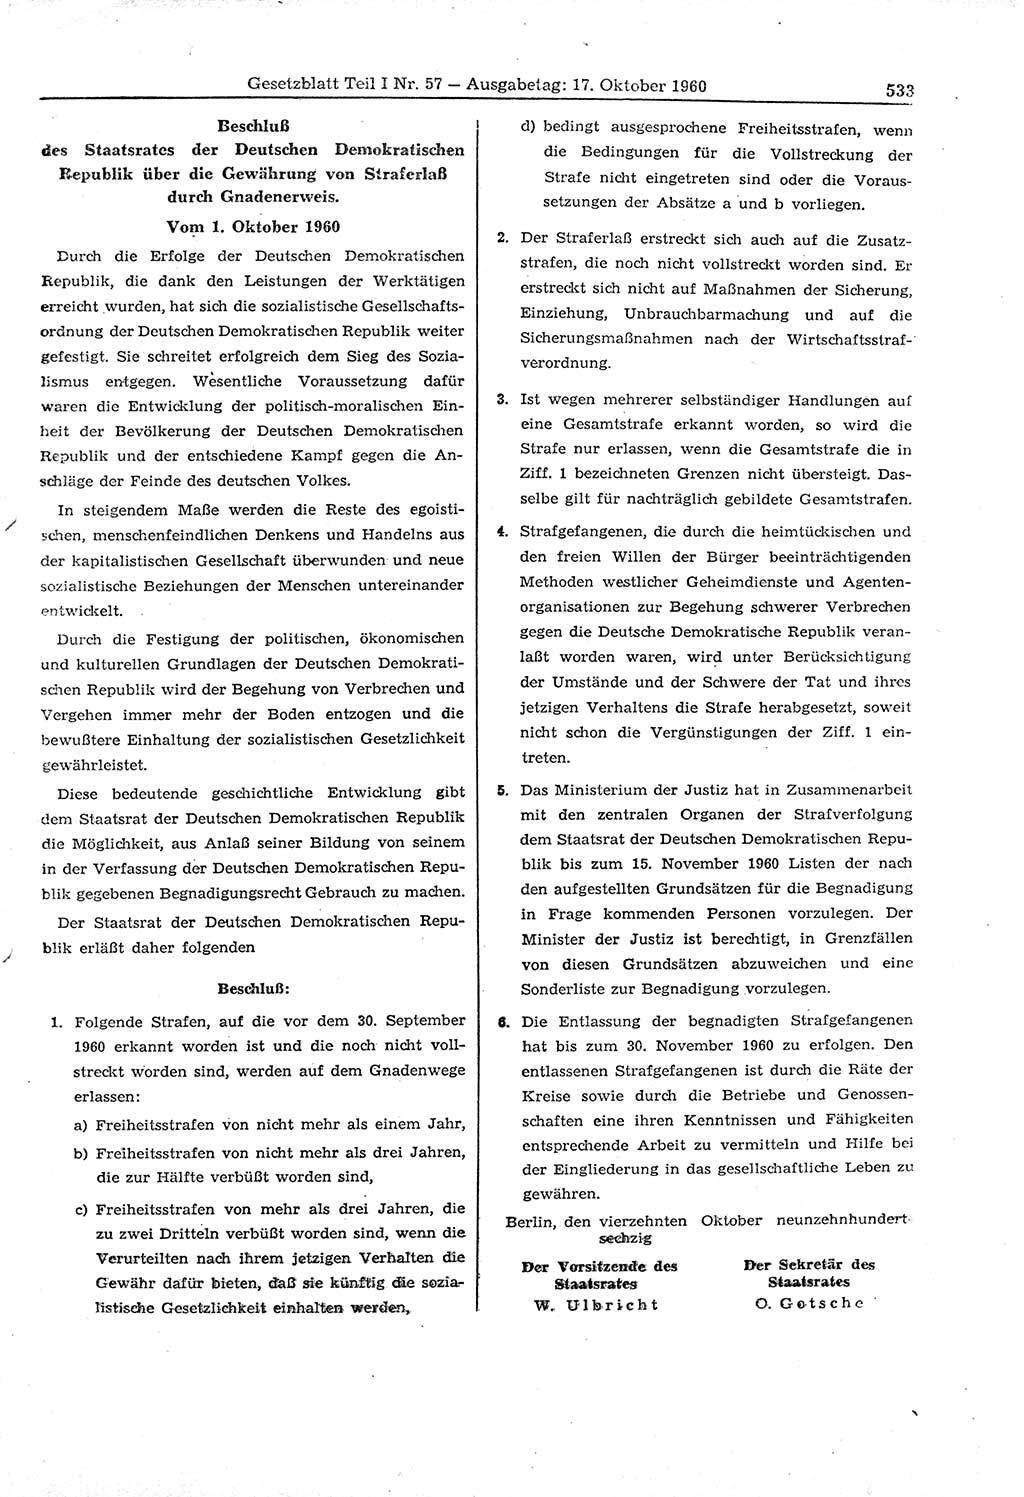 Gesetzblatt (GBl.) der Deutschen Demokratischen Republik (DDR) Teil Ⅰ 1960, Seite 533 (GBl. DDR Ⅰ 1960, S. 533)